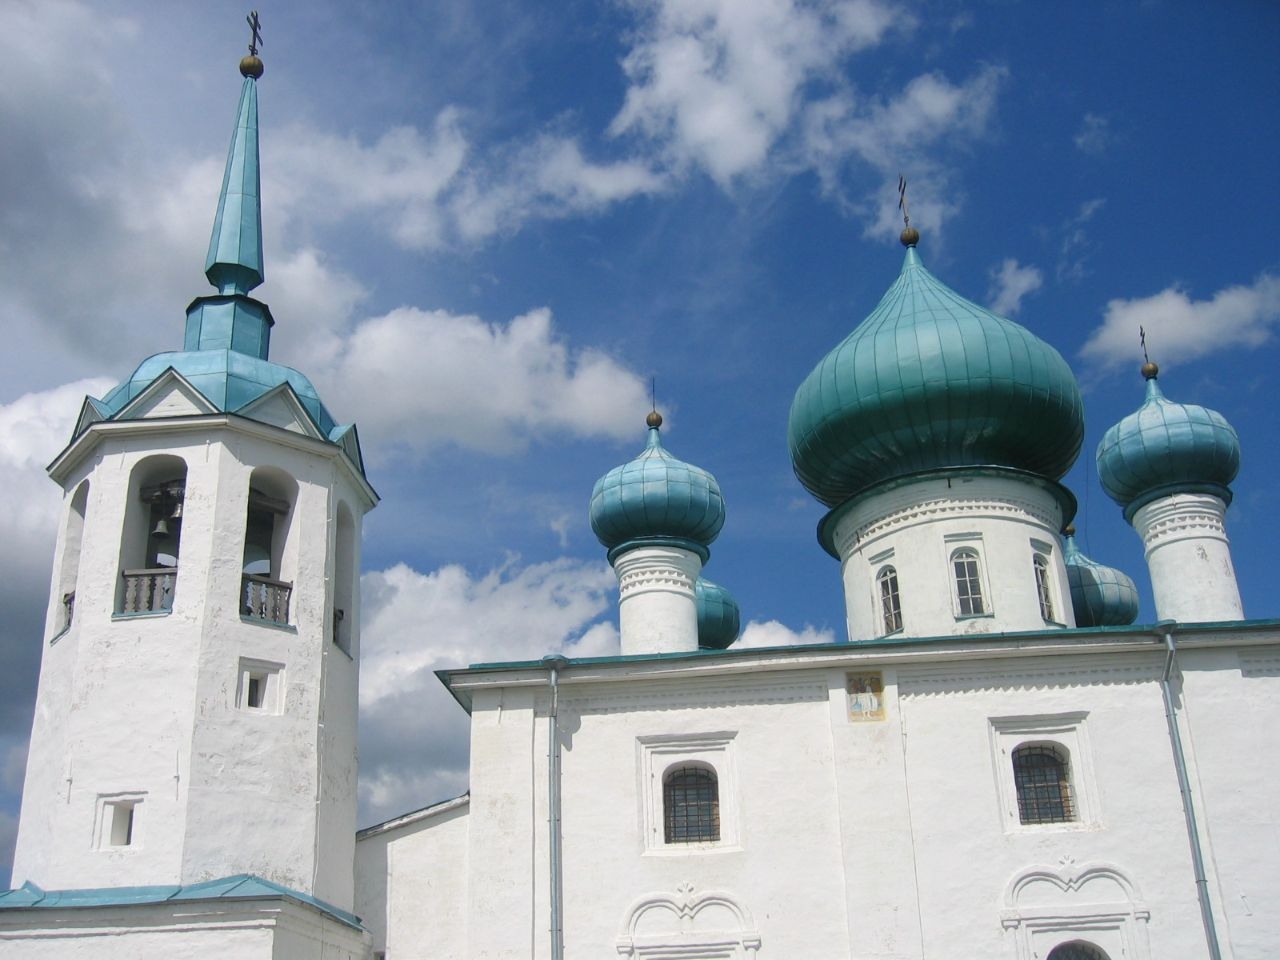 Церковь Рождества Иоанна Предтечи Старая Ладога, Россия